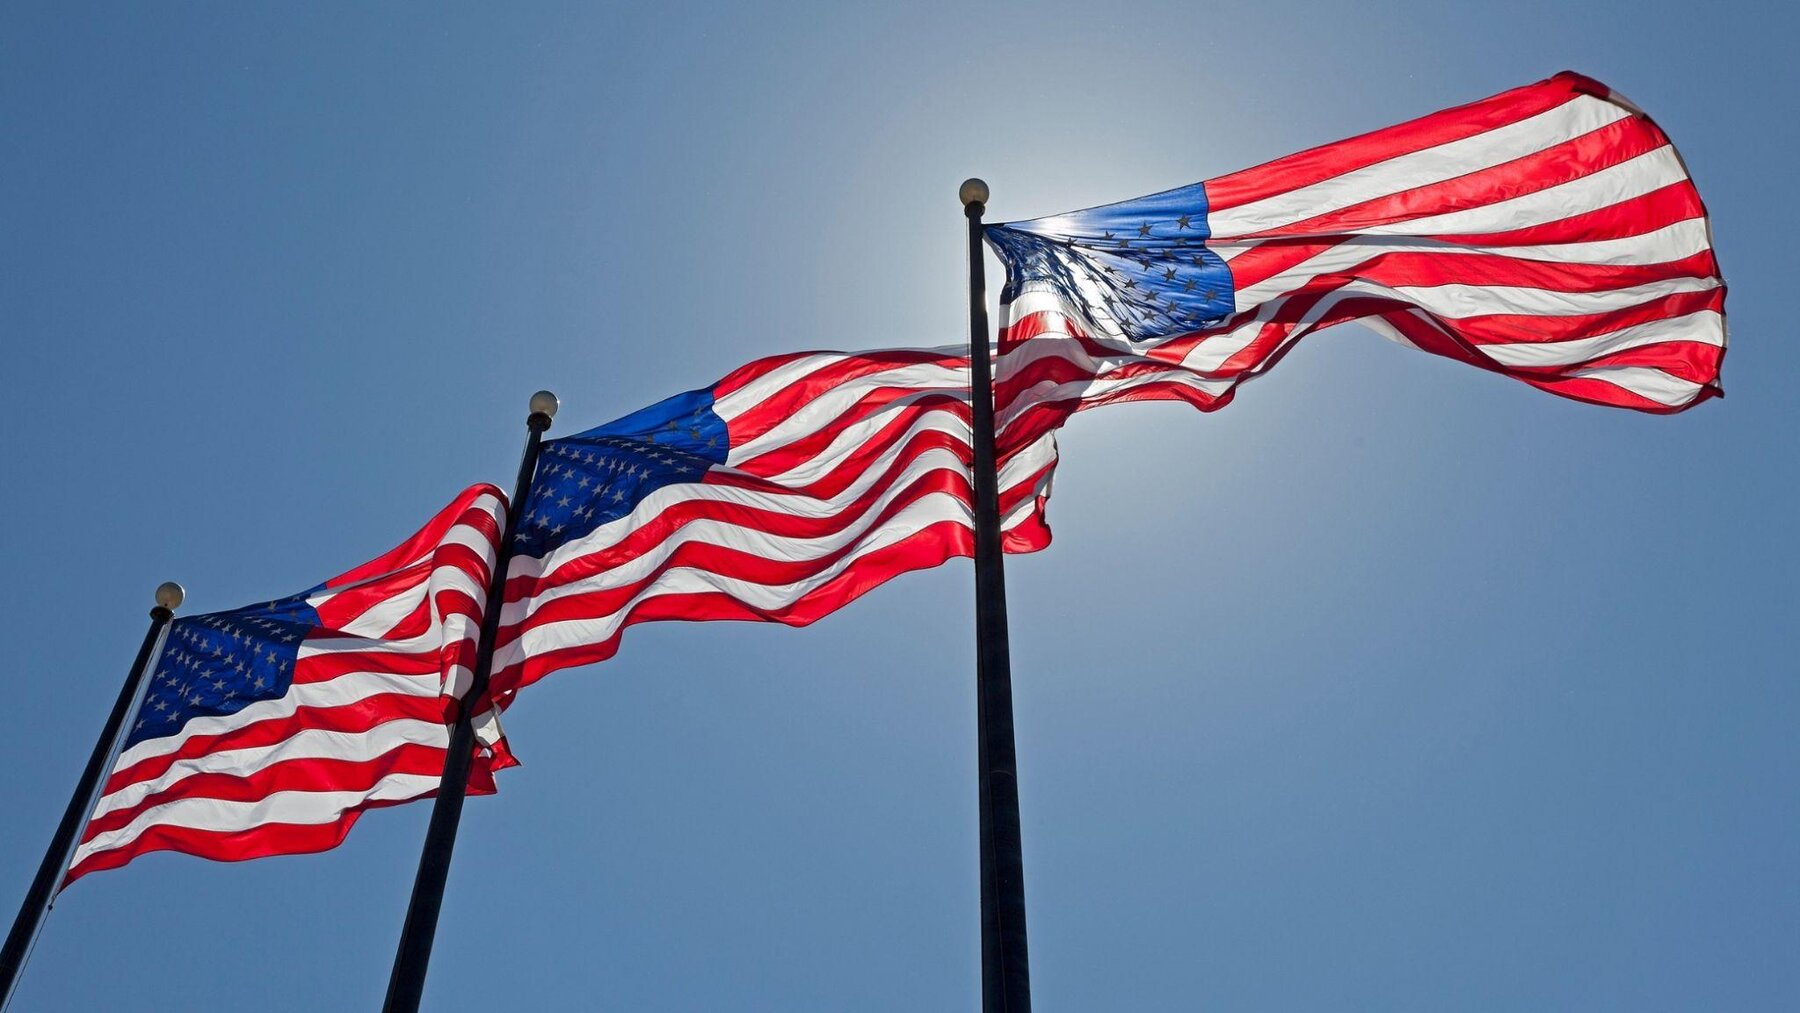 Quốc kỳ nước Mỹ - Biểu tượng nước Mỹ